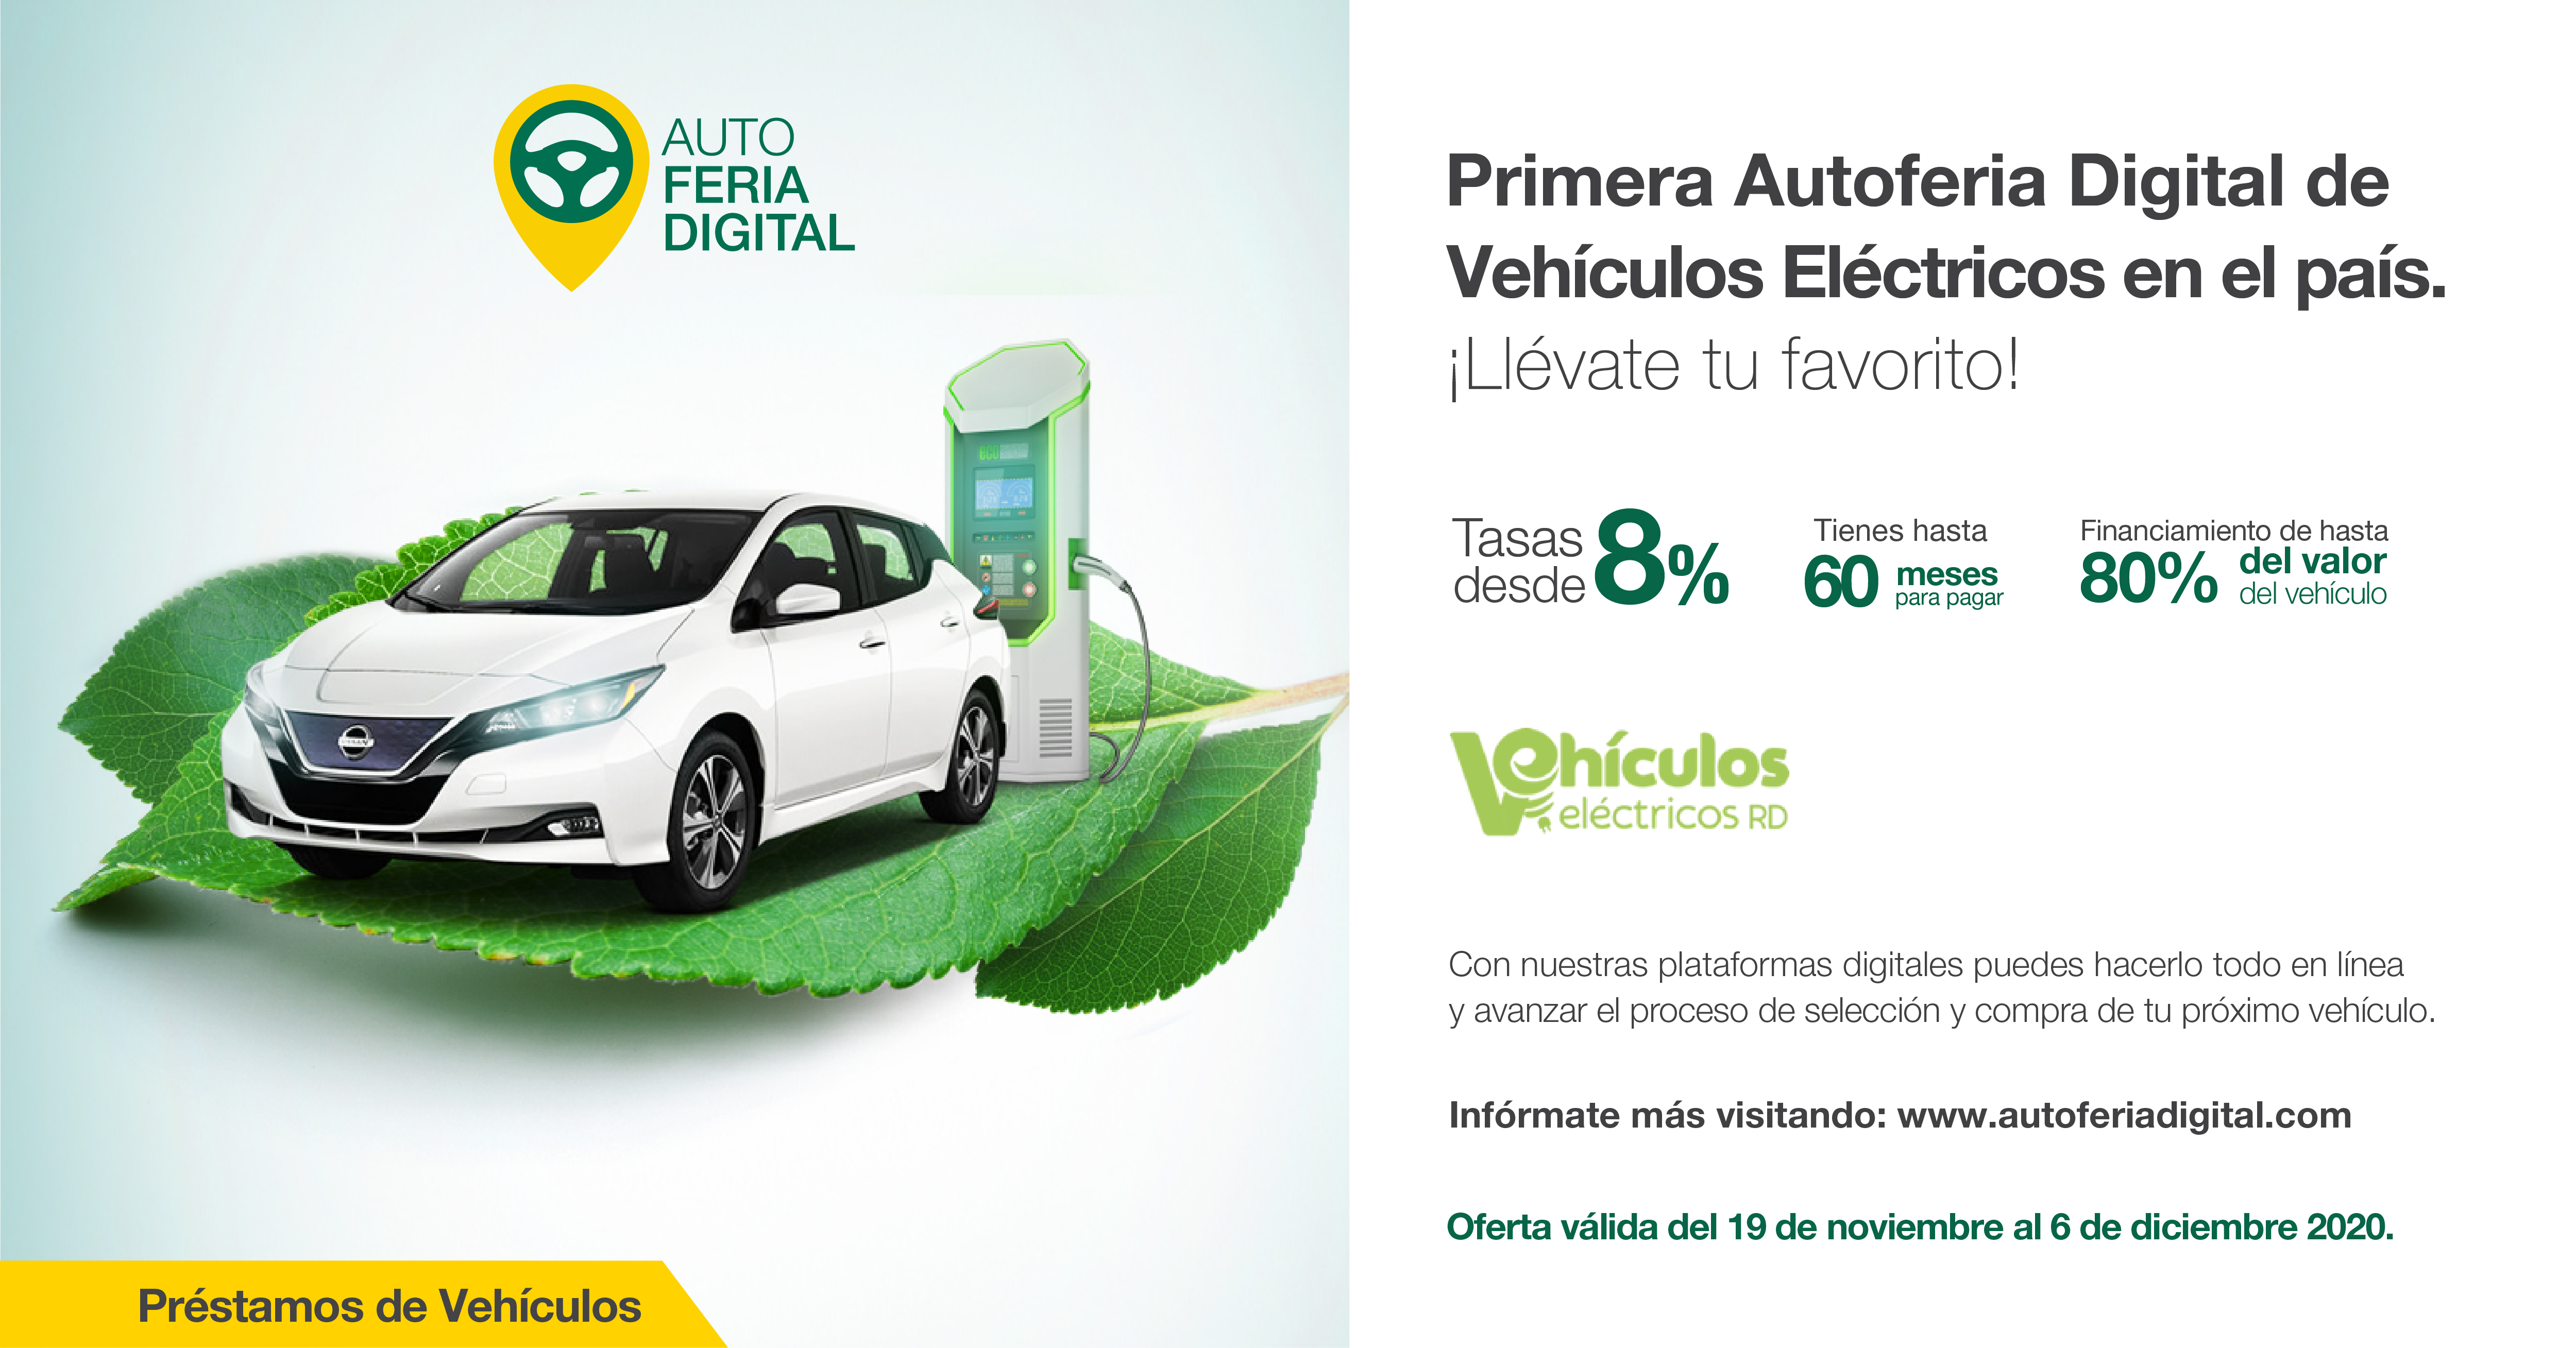 Primera Autoferia Digital de Vehículos Eléctricos en el país